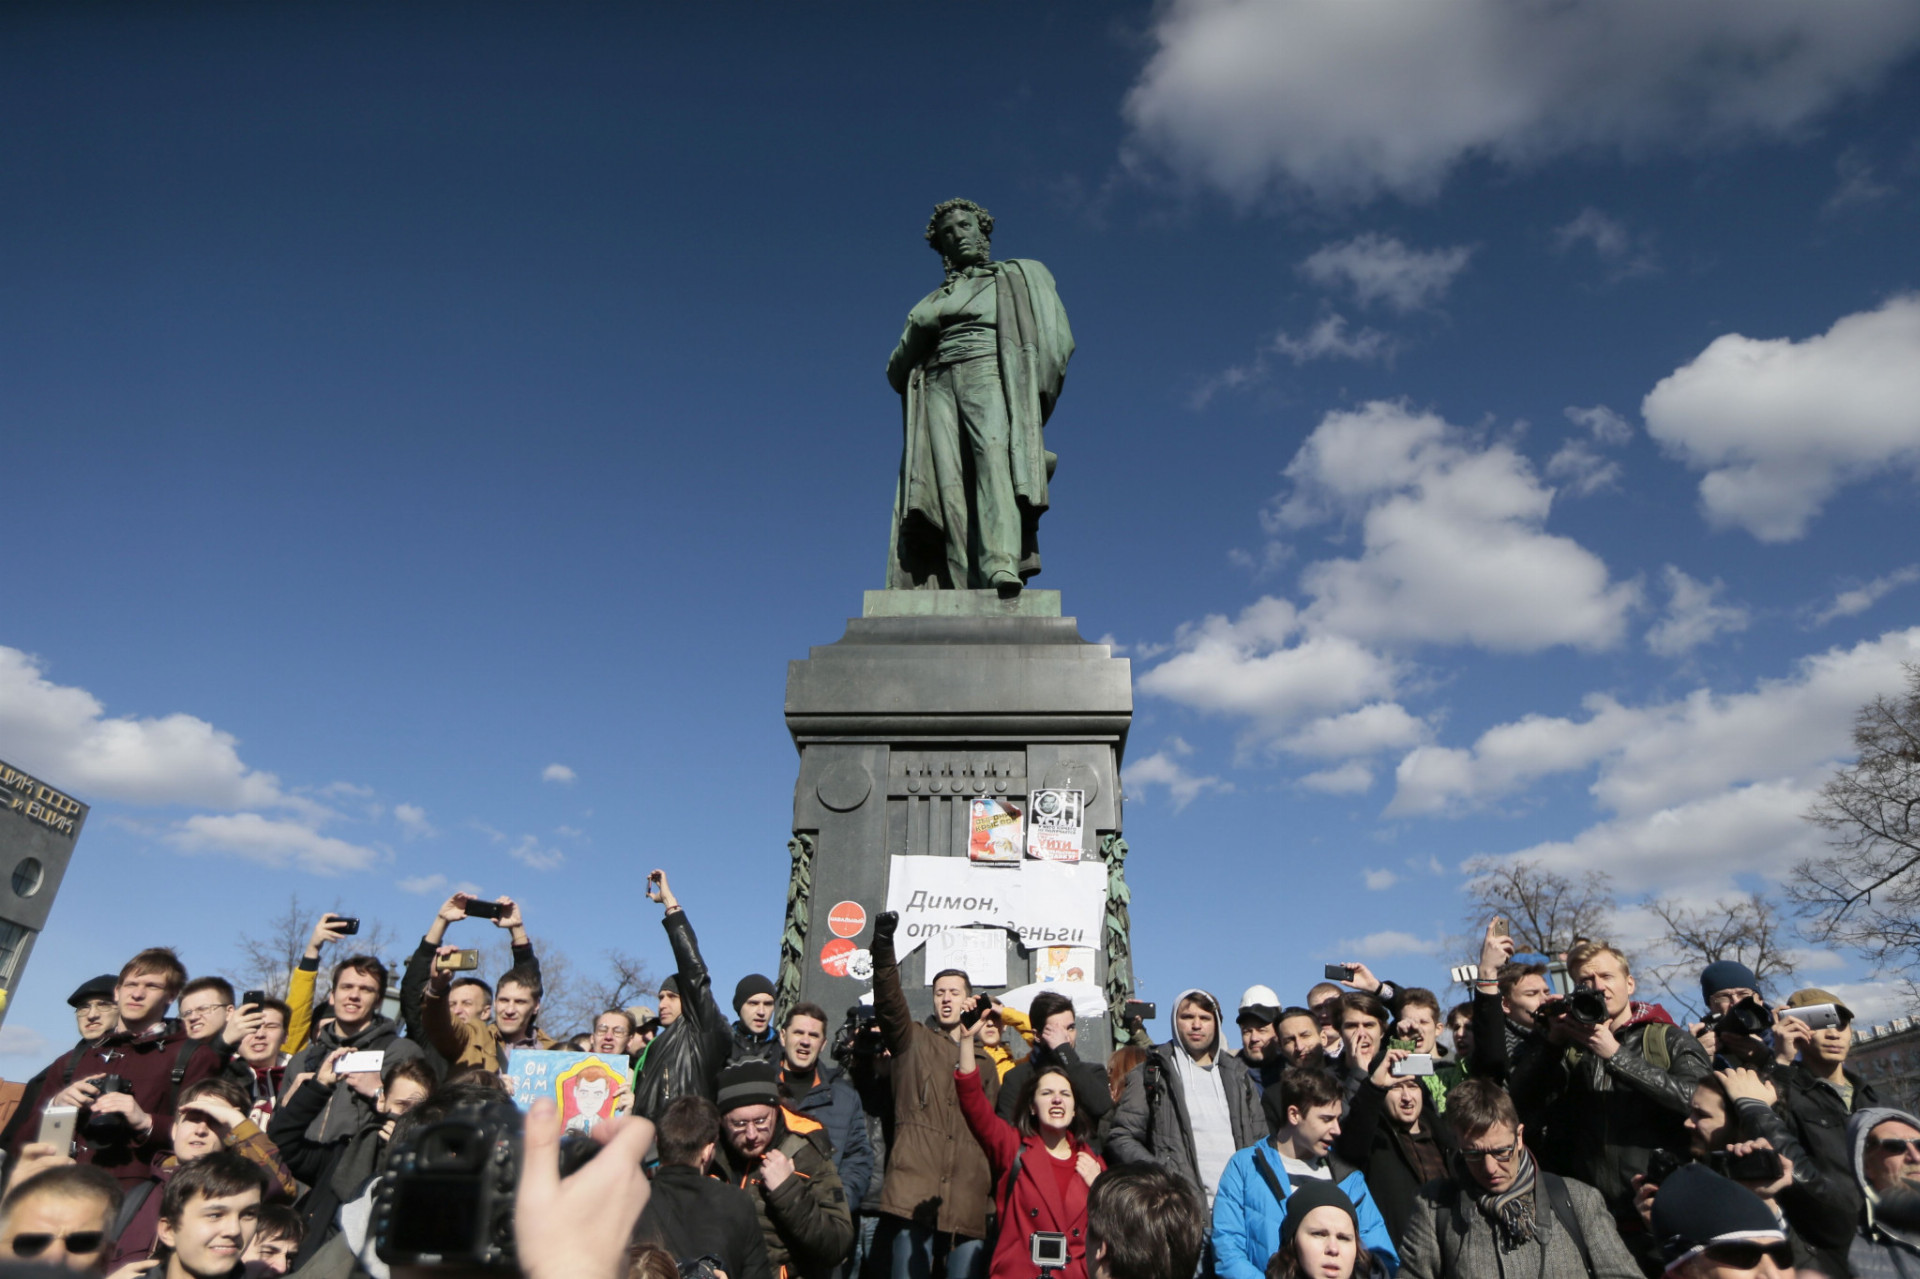 Na snímke demonštranti pri pamätníku A.S. Puškina s transparentom "Dimon (prezývka premiéra D. Medvedeva), vráť peniaze späť!" počas protestu proti korupcii v Moskve 26. marca 2017.